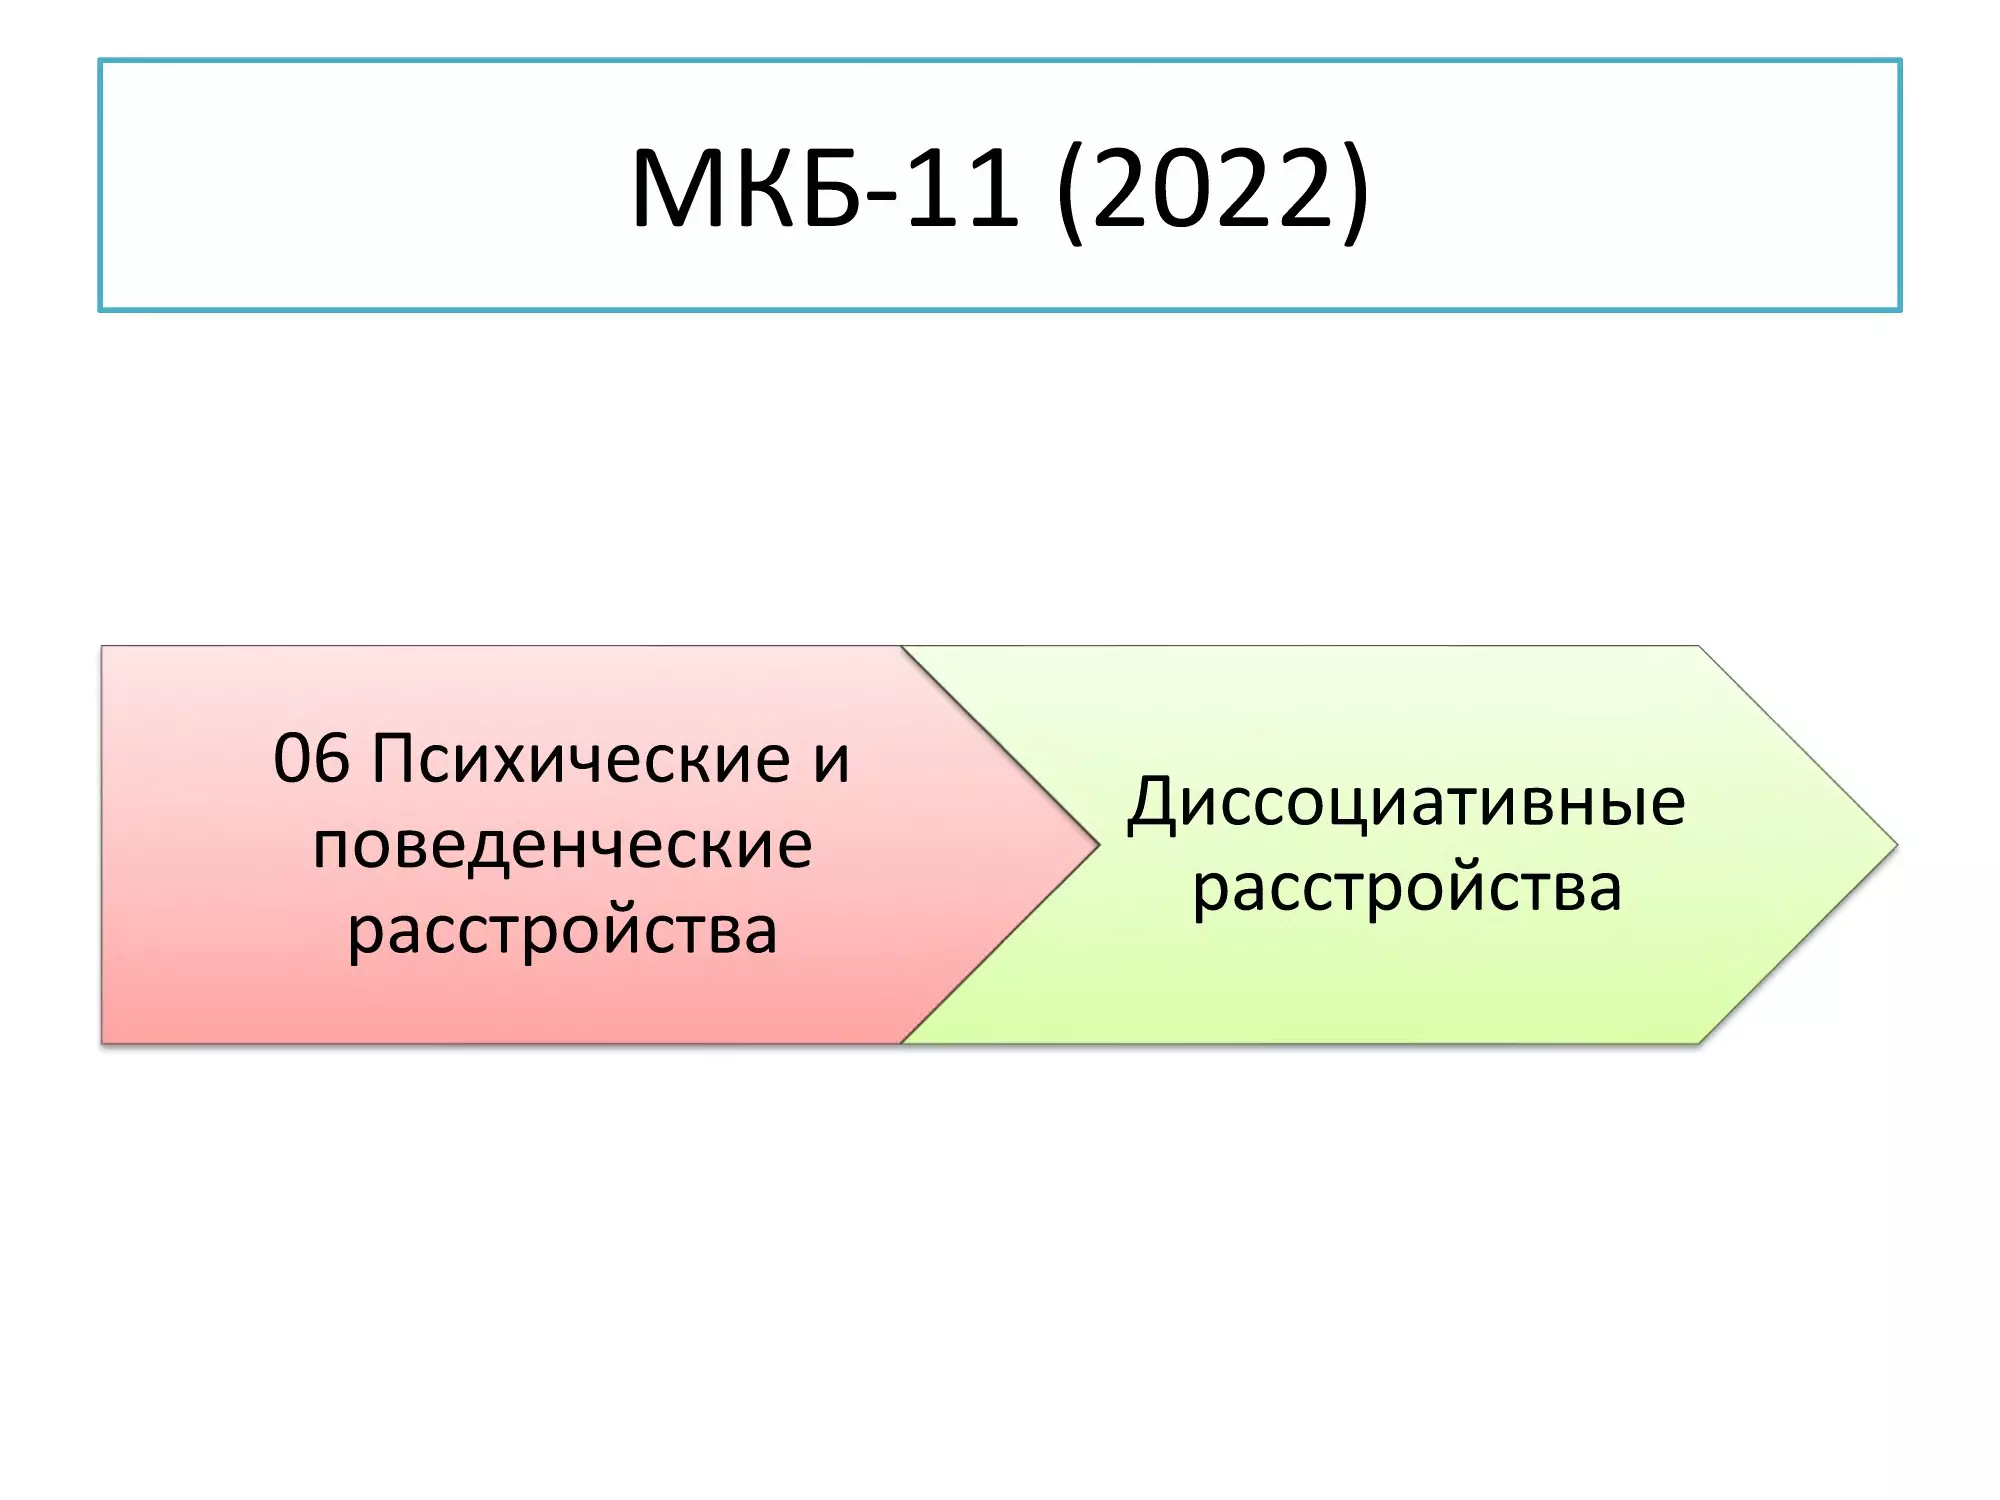 Слайд 25, МКБ-11 (2022)